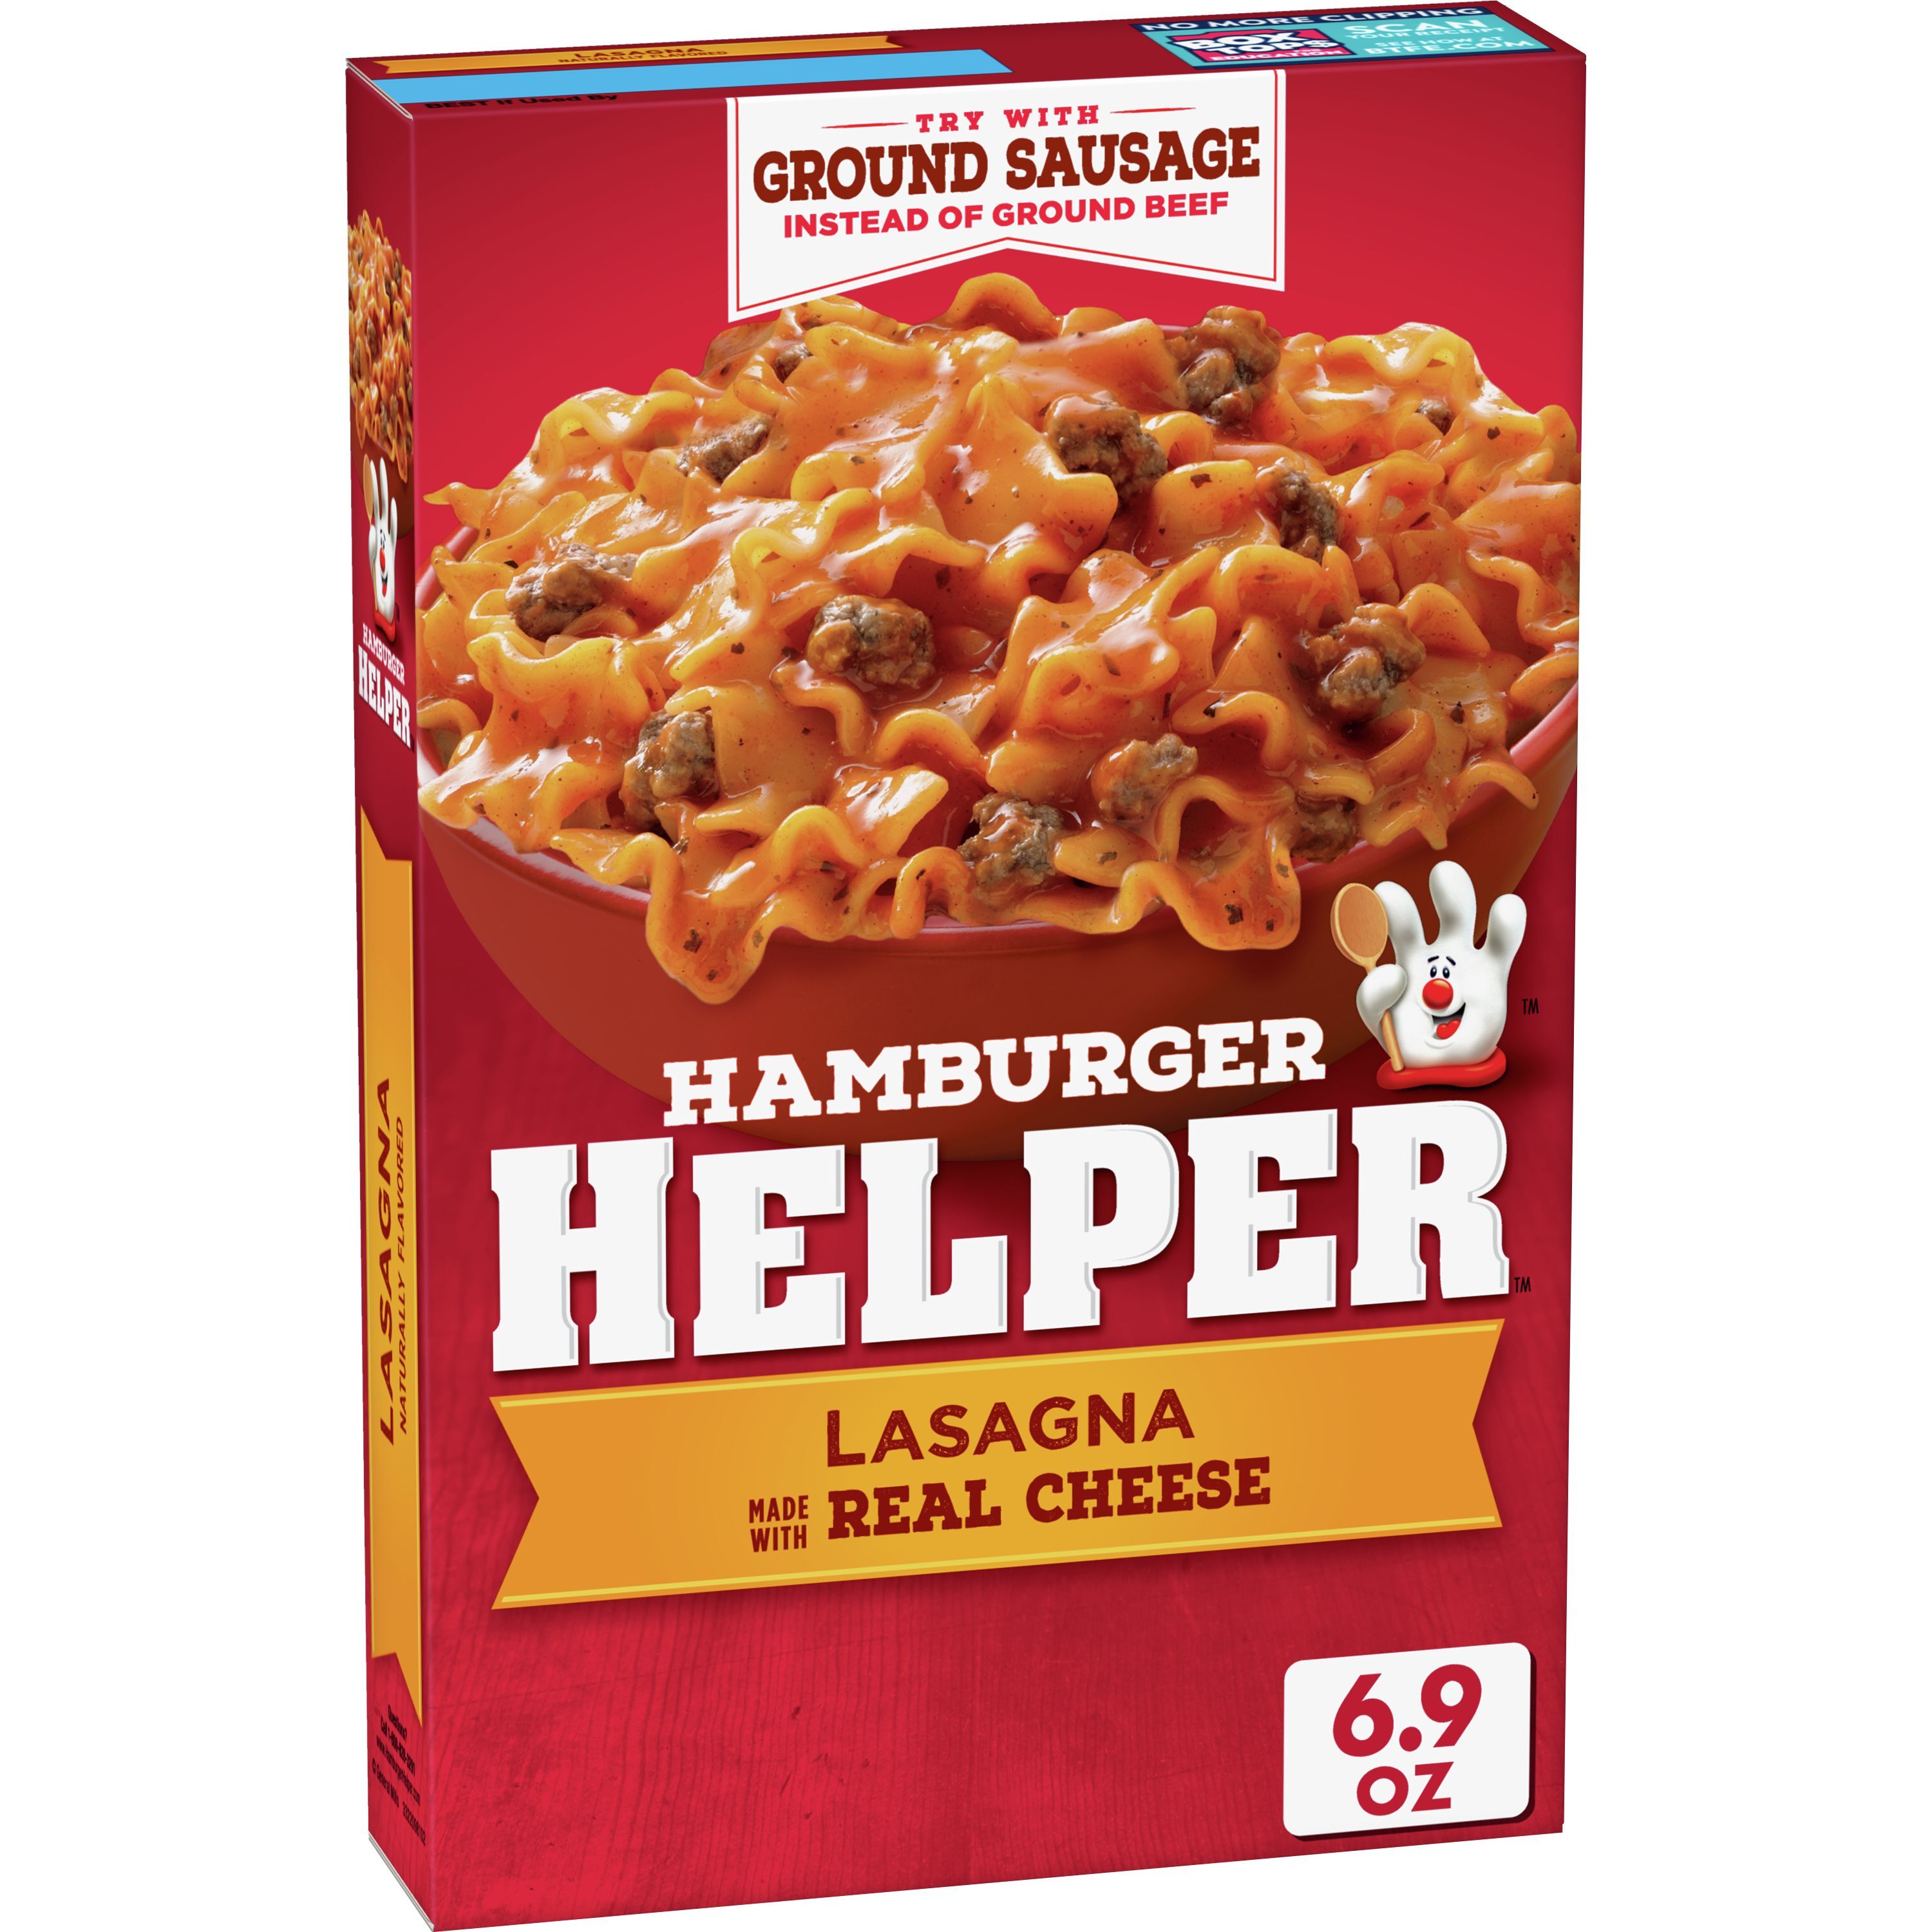 Hamburger Helper, Lasagna, 6.9 oz box - image 1 of 9